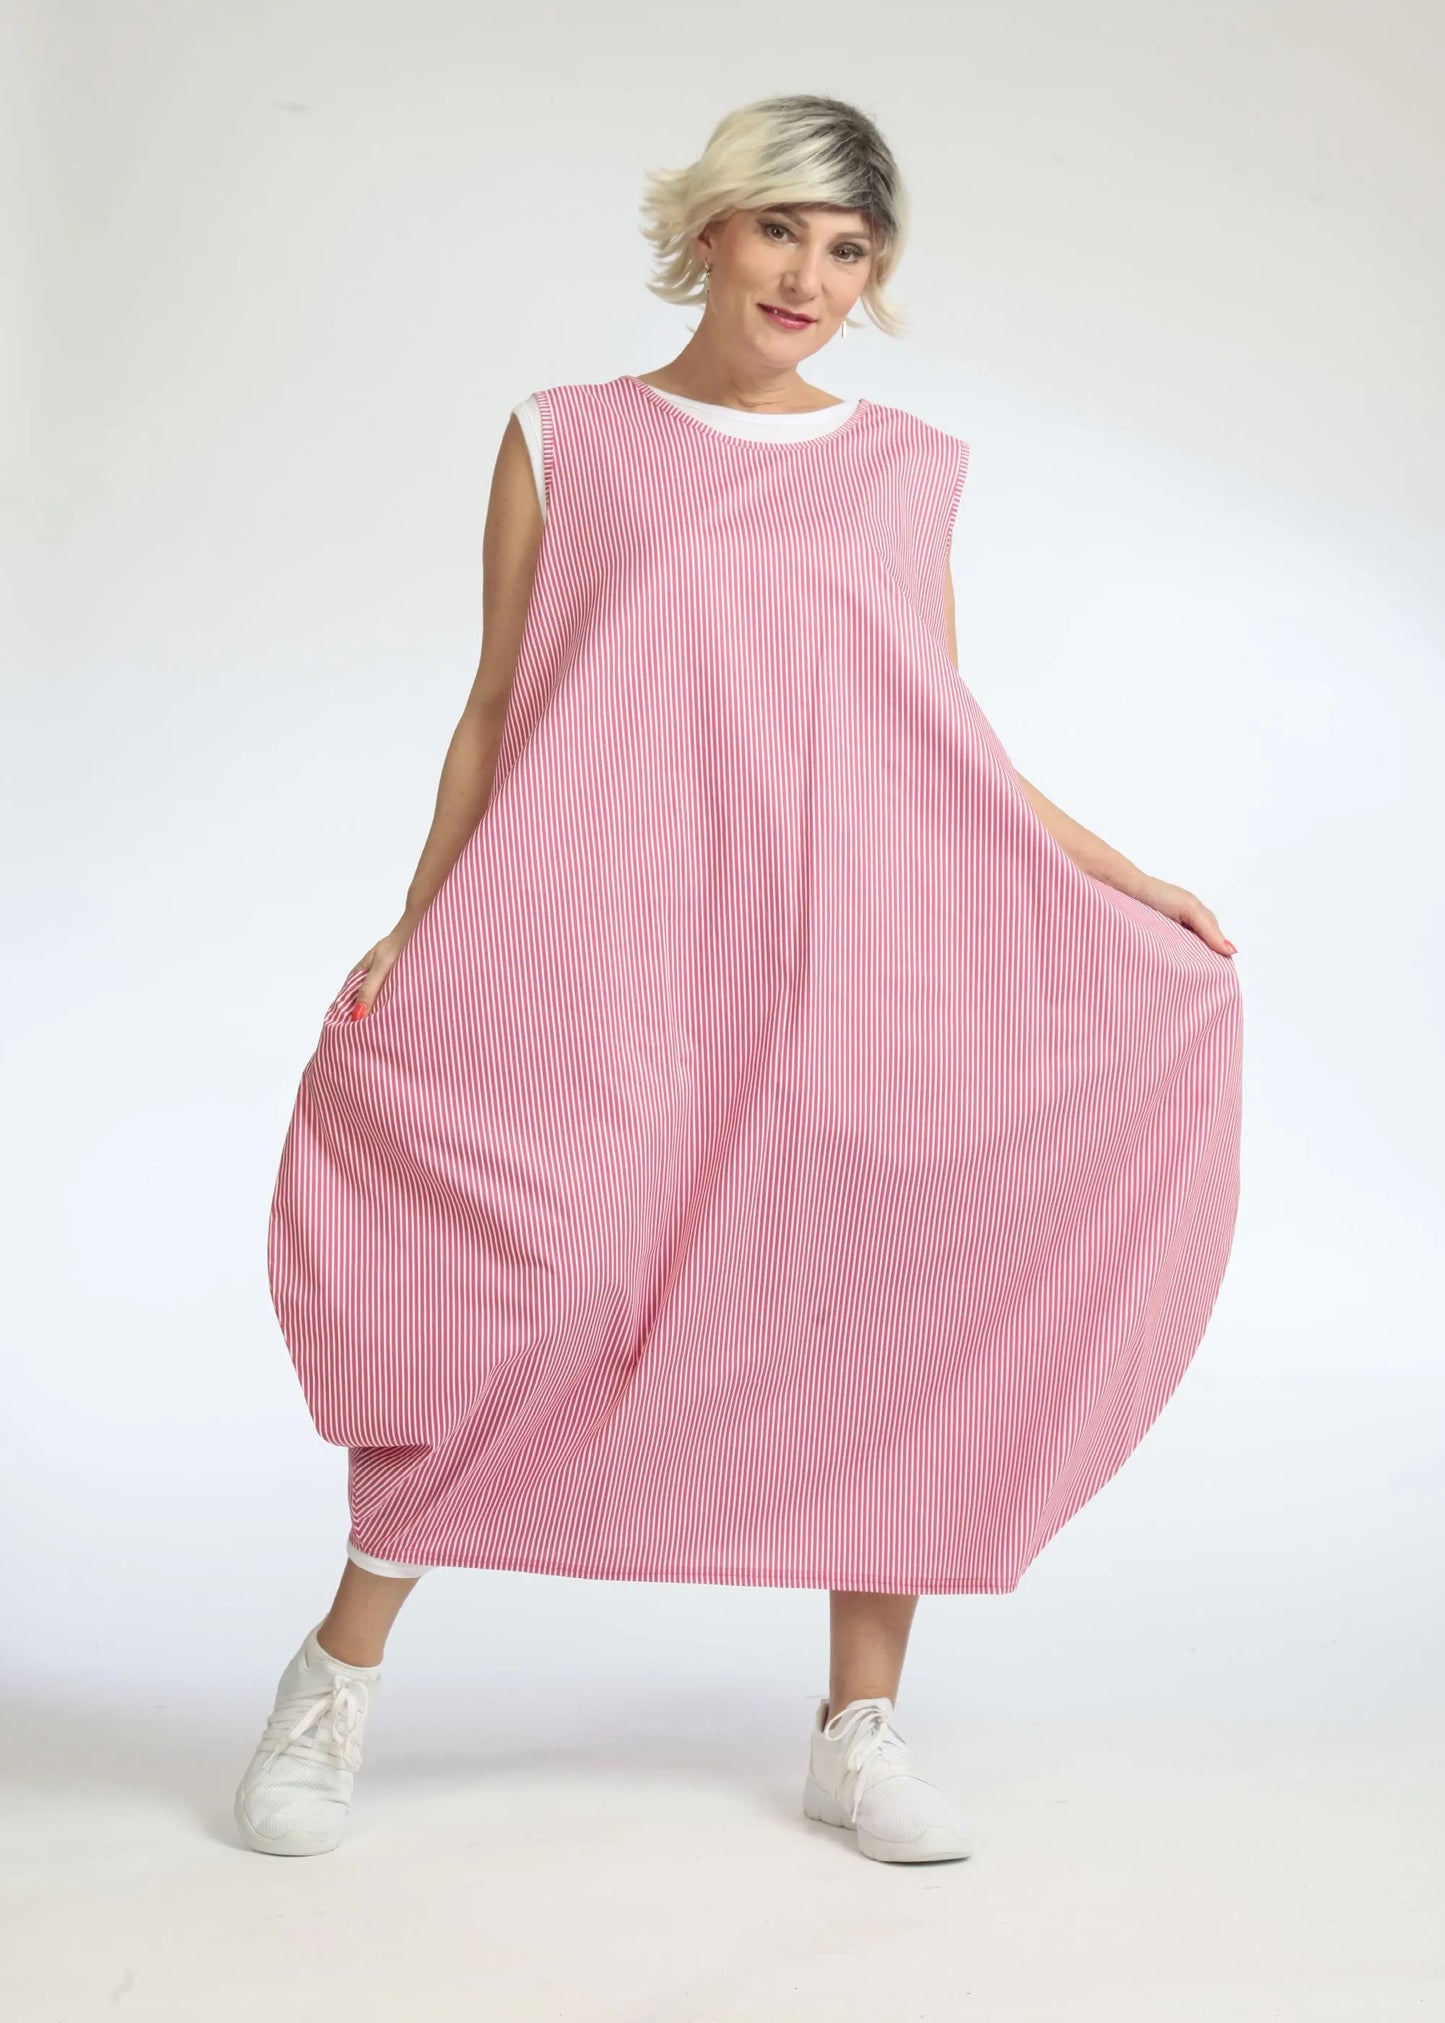 Sommer Kleid in Ballon Form aus glatter Popeline Qualität, Verena in Pink-Weiß